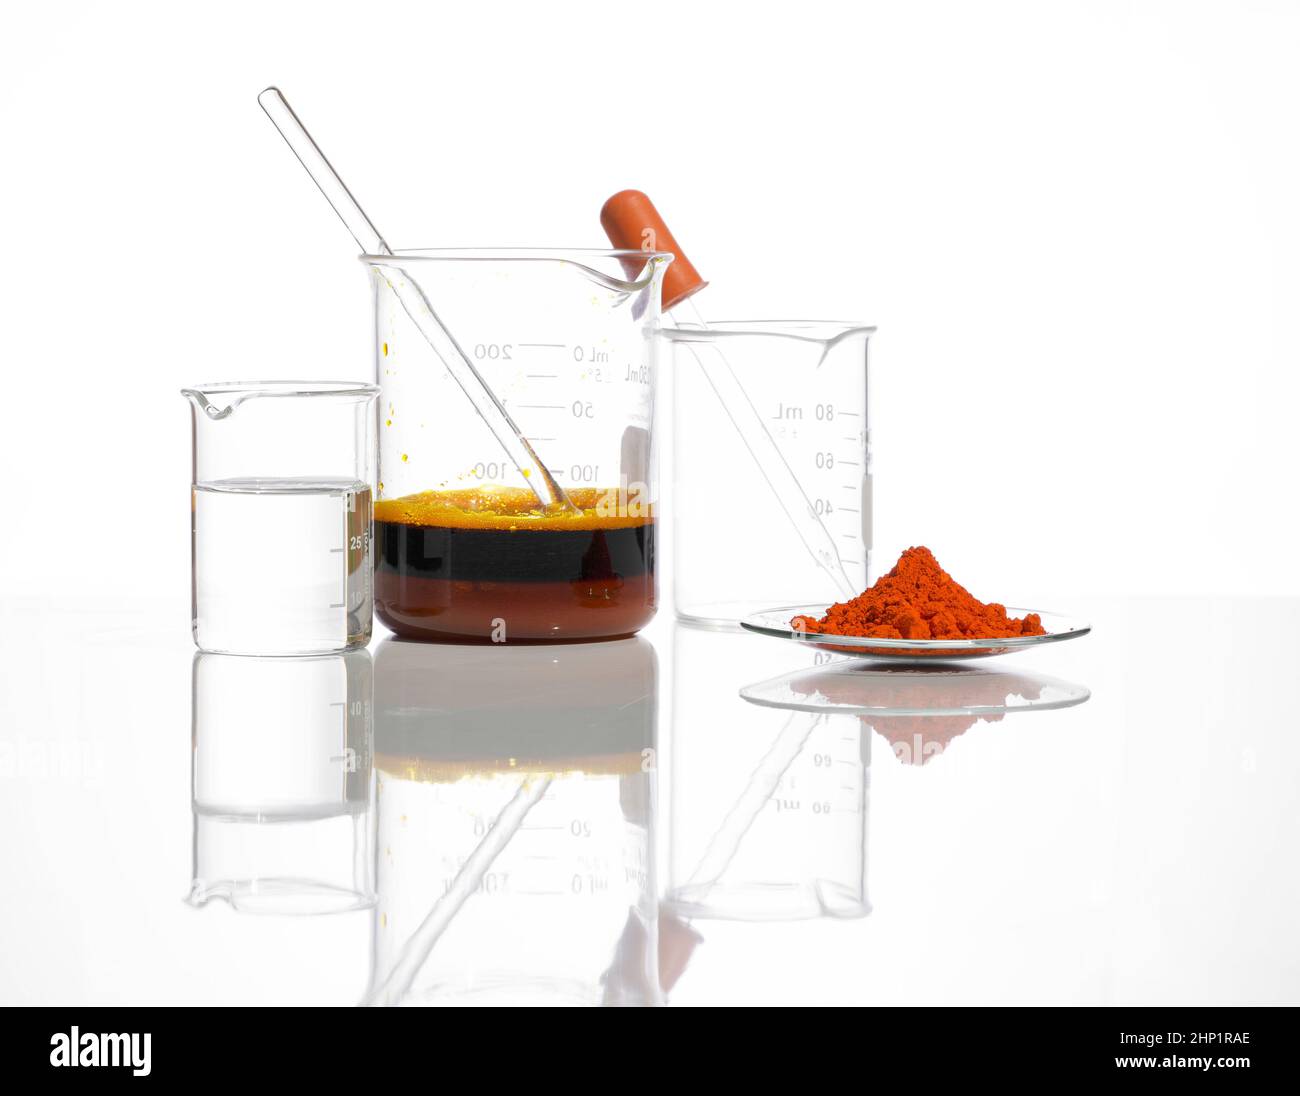 Oxyde de plomb (II,IV) dans le verre de surveillance chimique placer à côté du liquide transparent et du liquide de chlorure ferrique avec tige d'agitation dans le bécher.Produit chimique de gros plan Banque D'Images